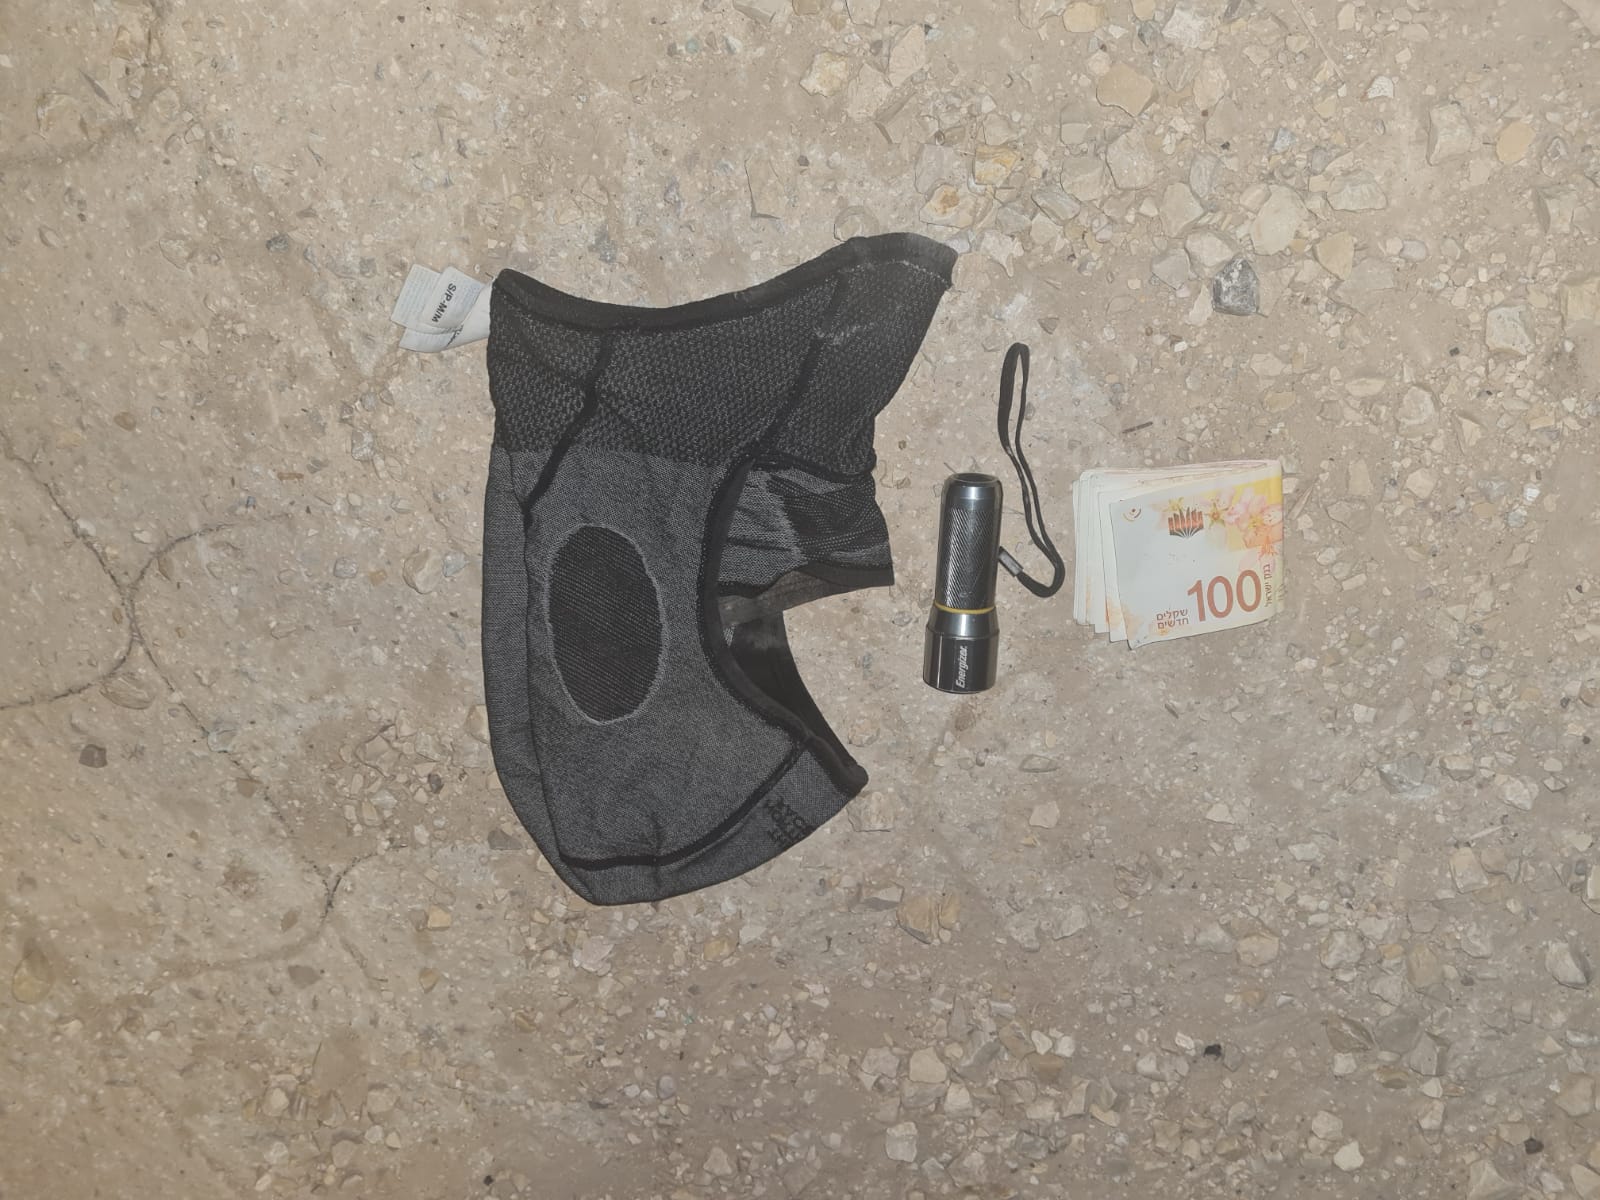 כובע גרב, פנס וכסף מזומן של אחד החשודים (צילום: משטרת ישראל)